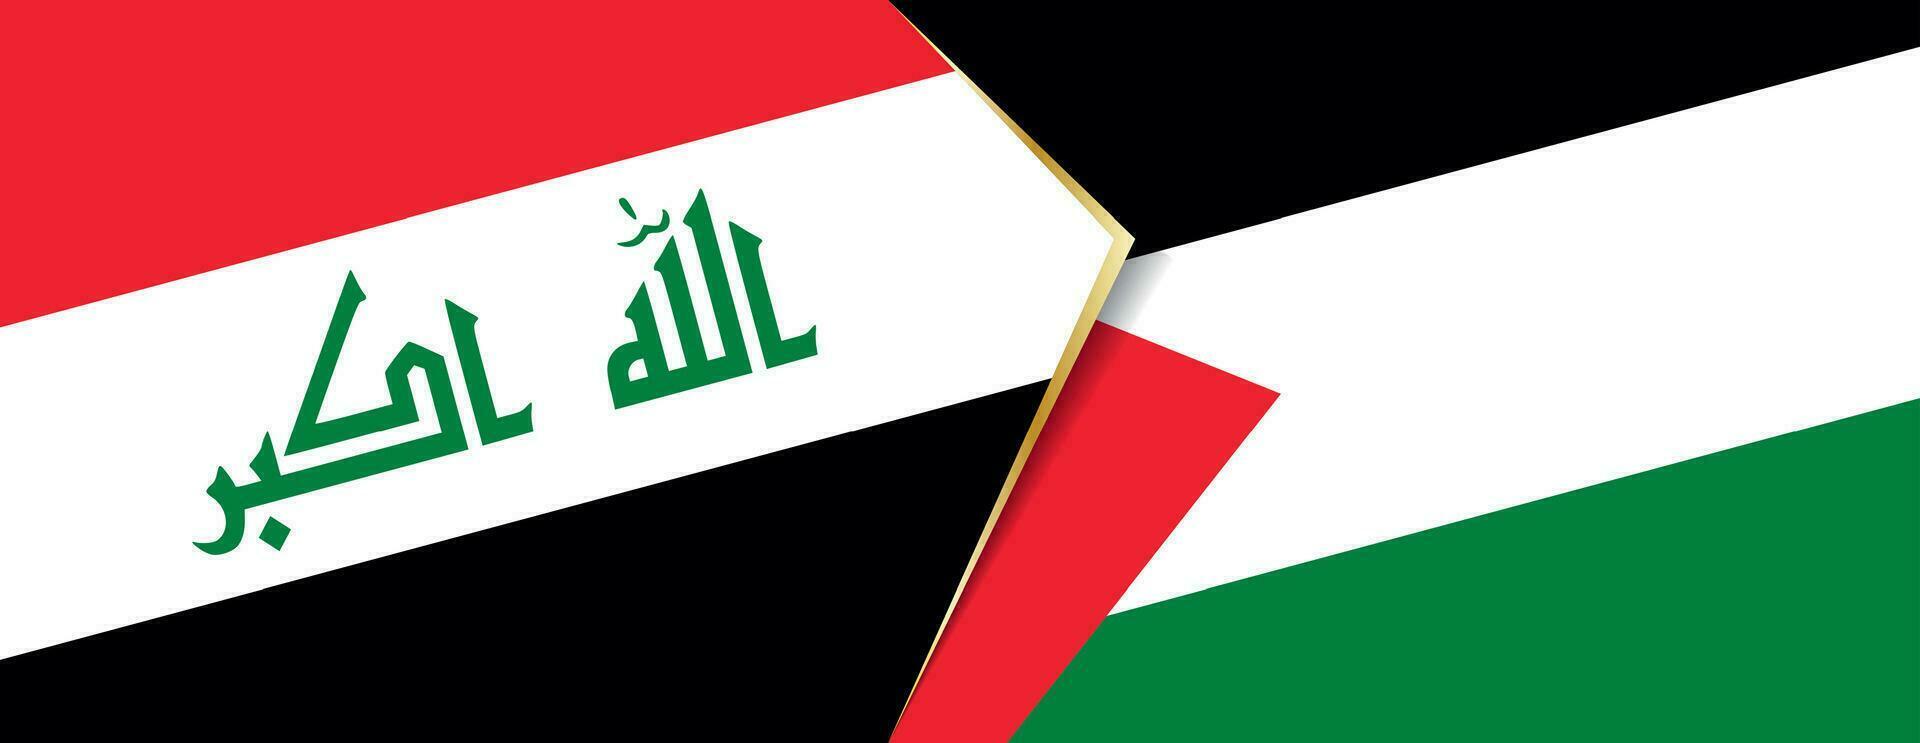 Iraque e Palestina bandeiras, dois vetor bandeiras.